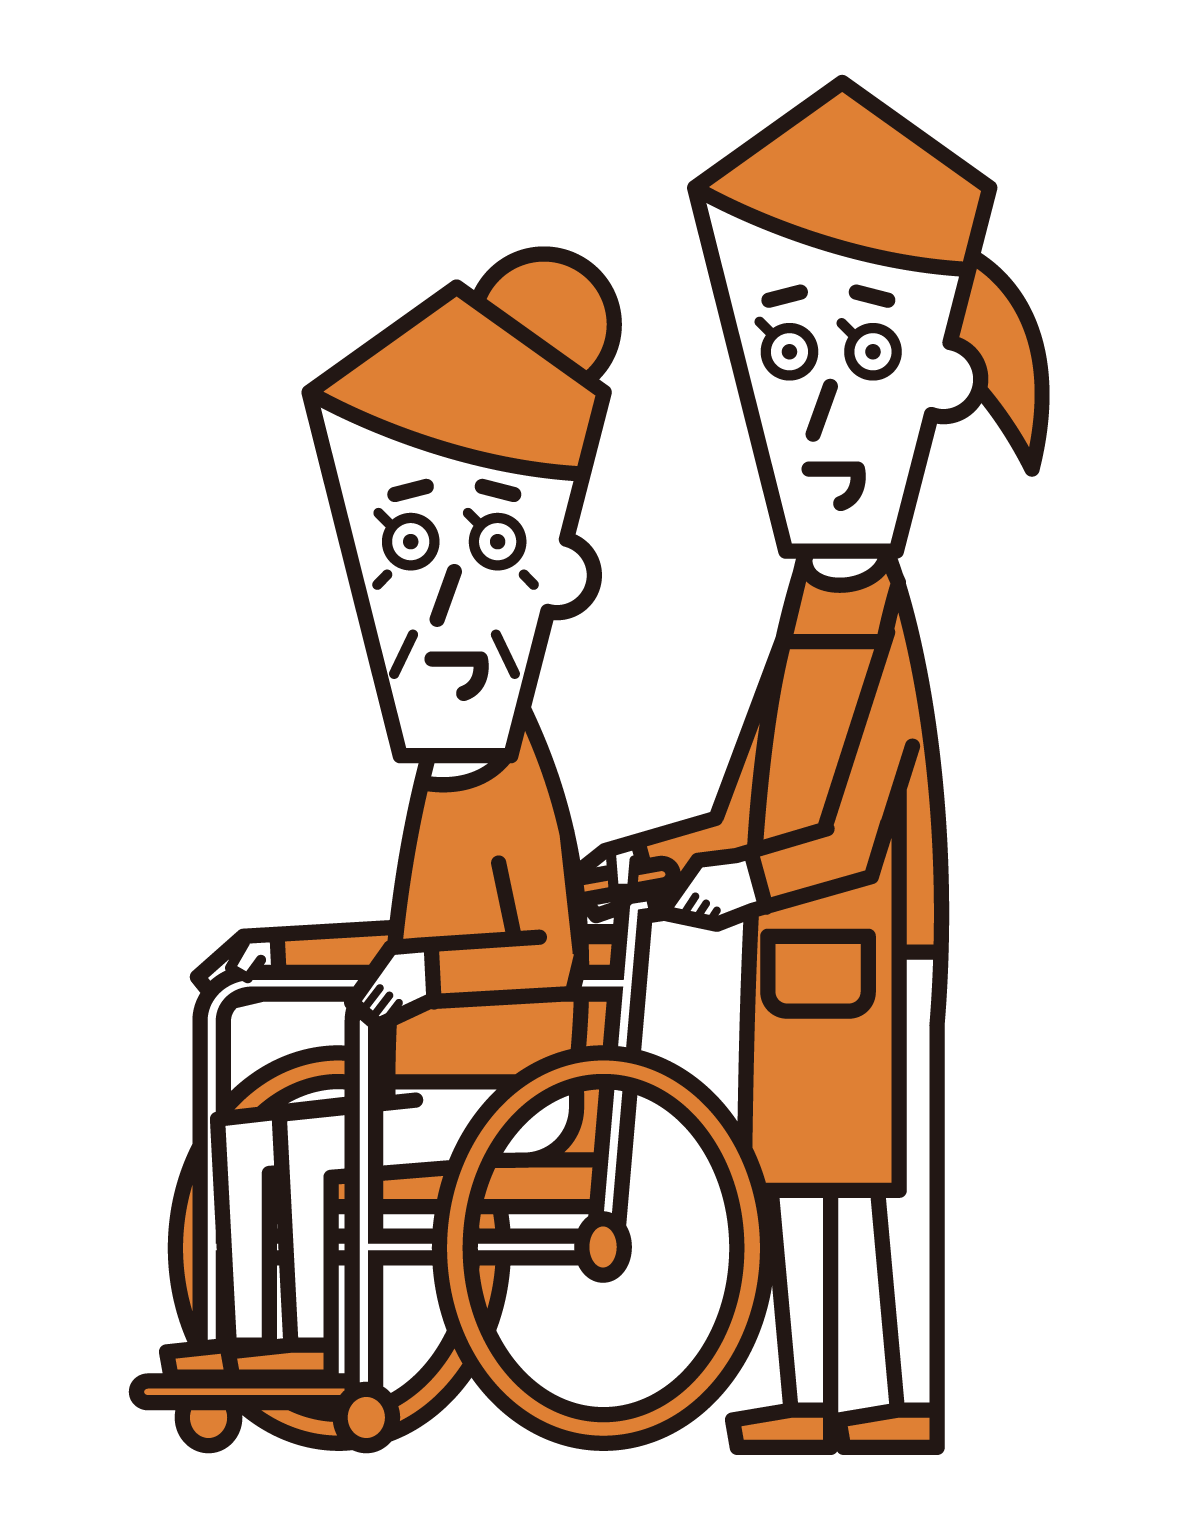 車椅子に乗っている人（おばあさん）と押す訪問介護員（女性）のイラスト